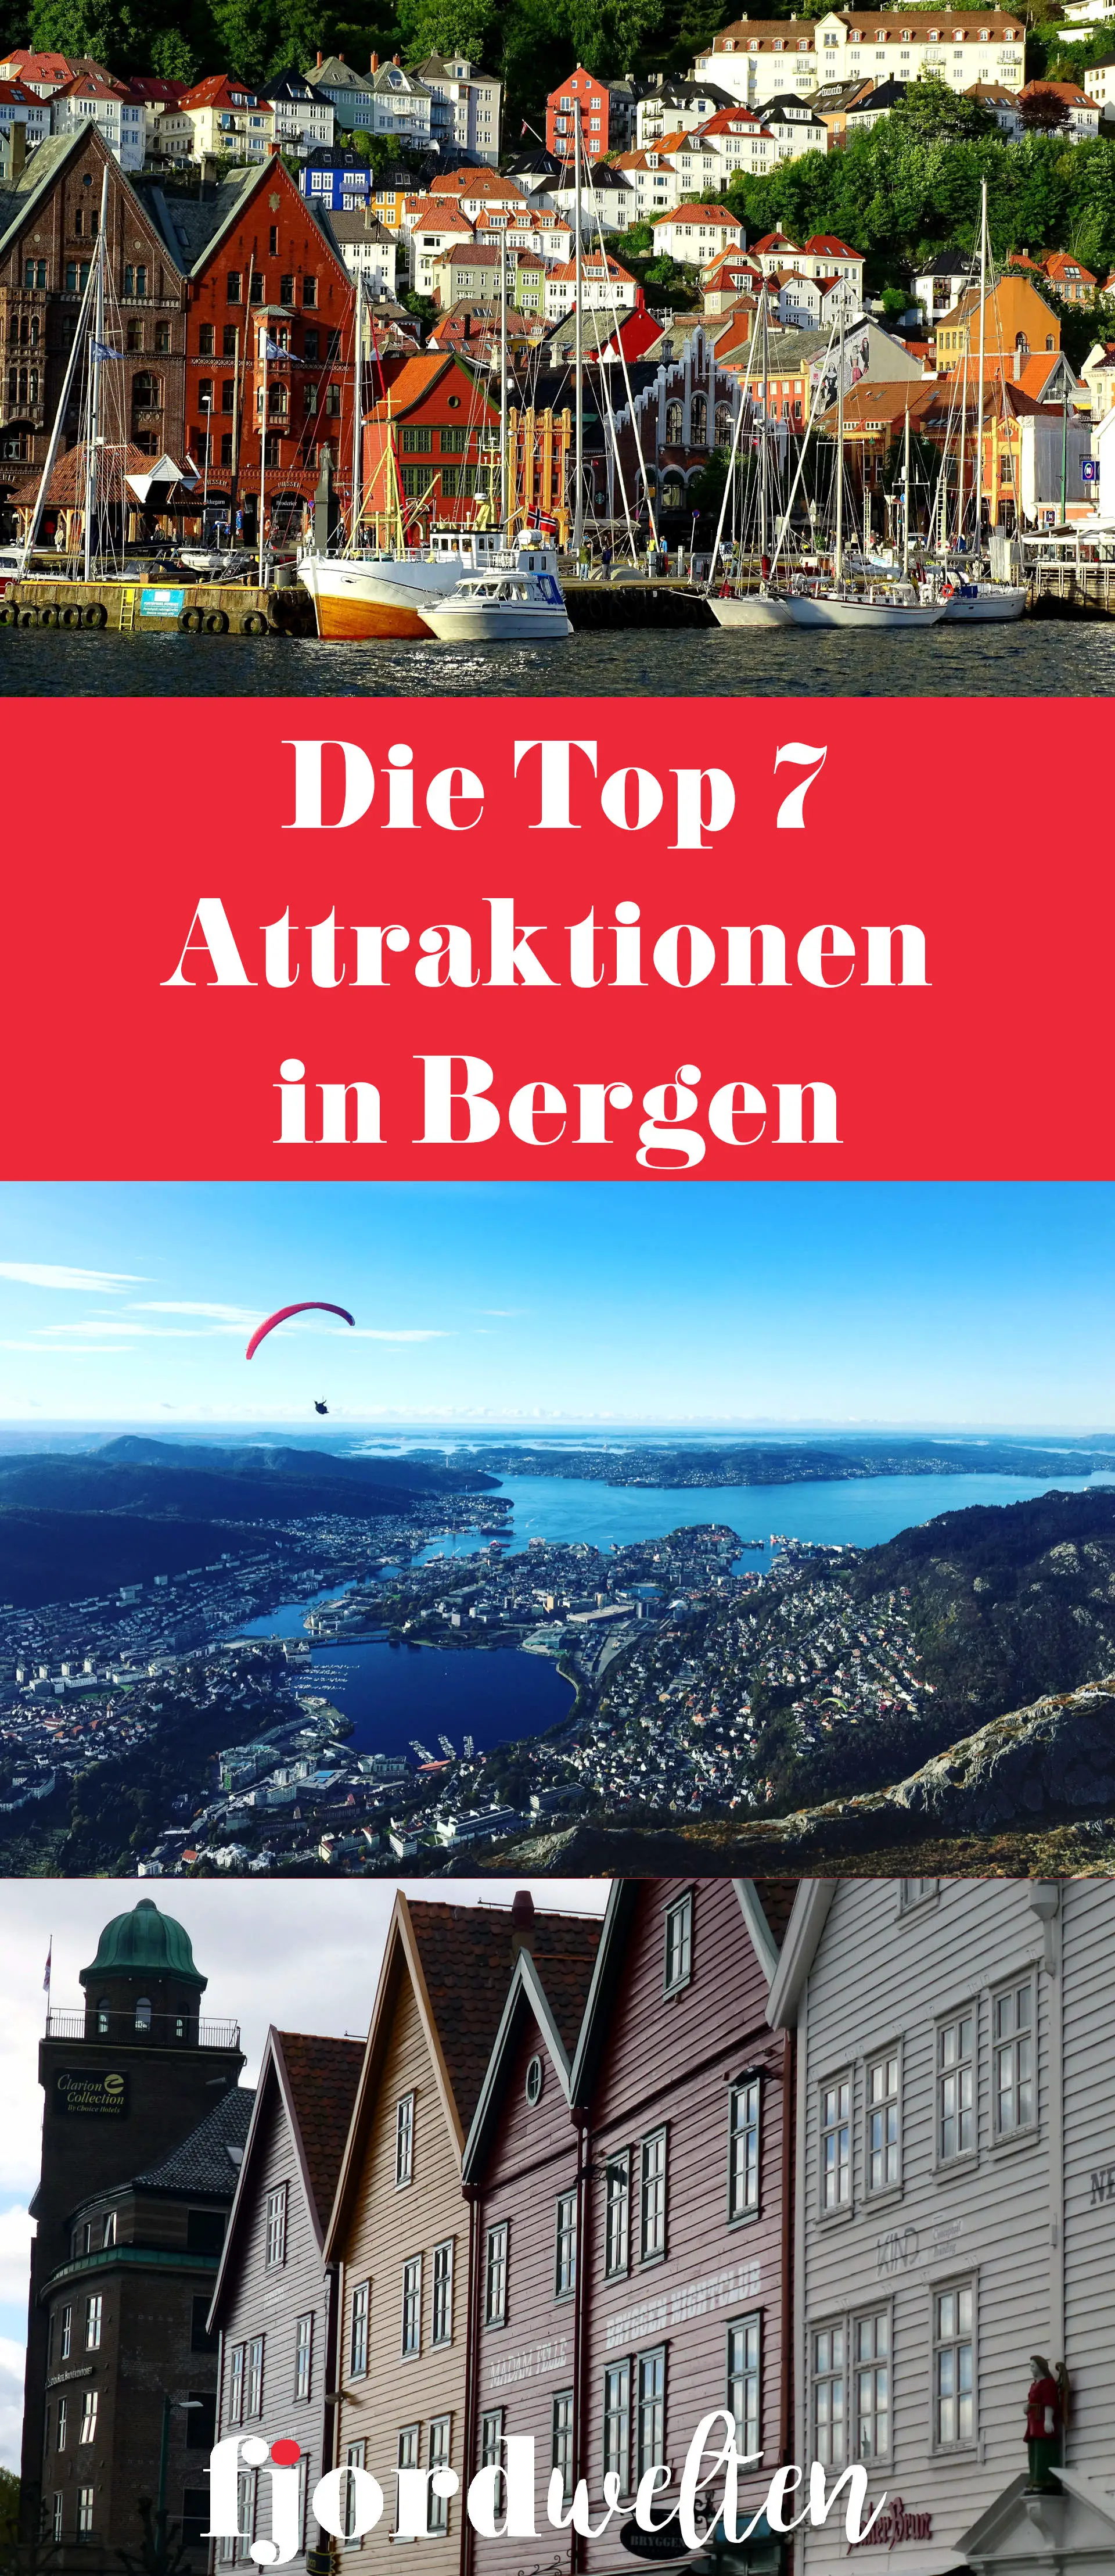 Die Top 7 Sehenswürdigkeiten in Bergen